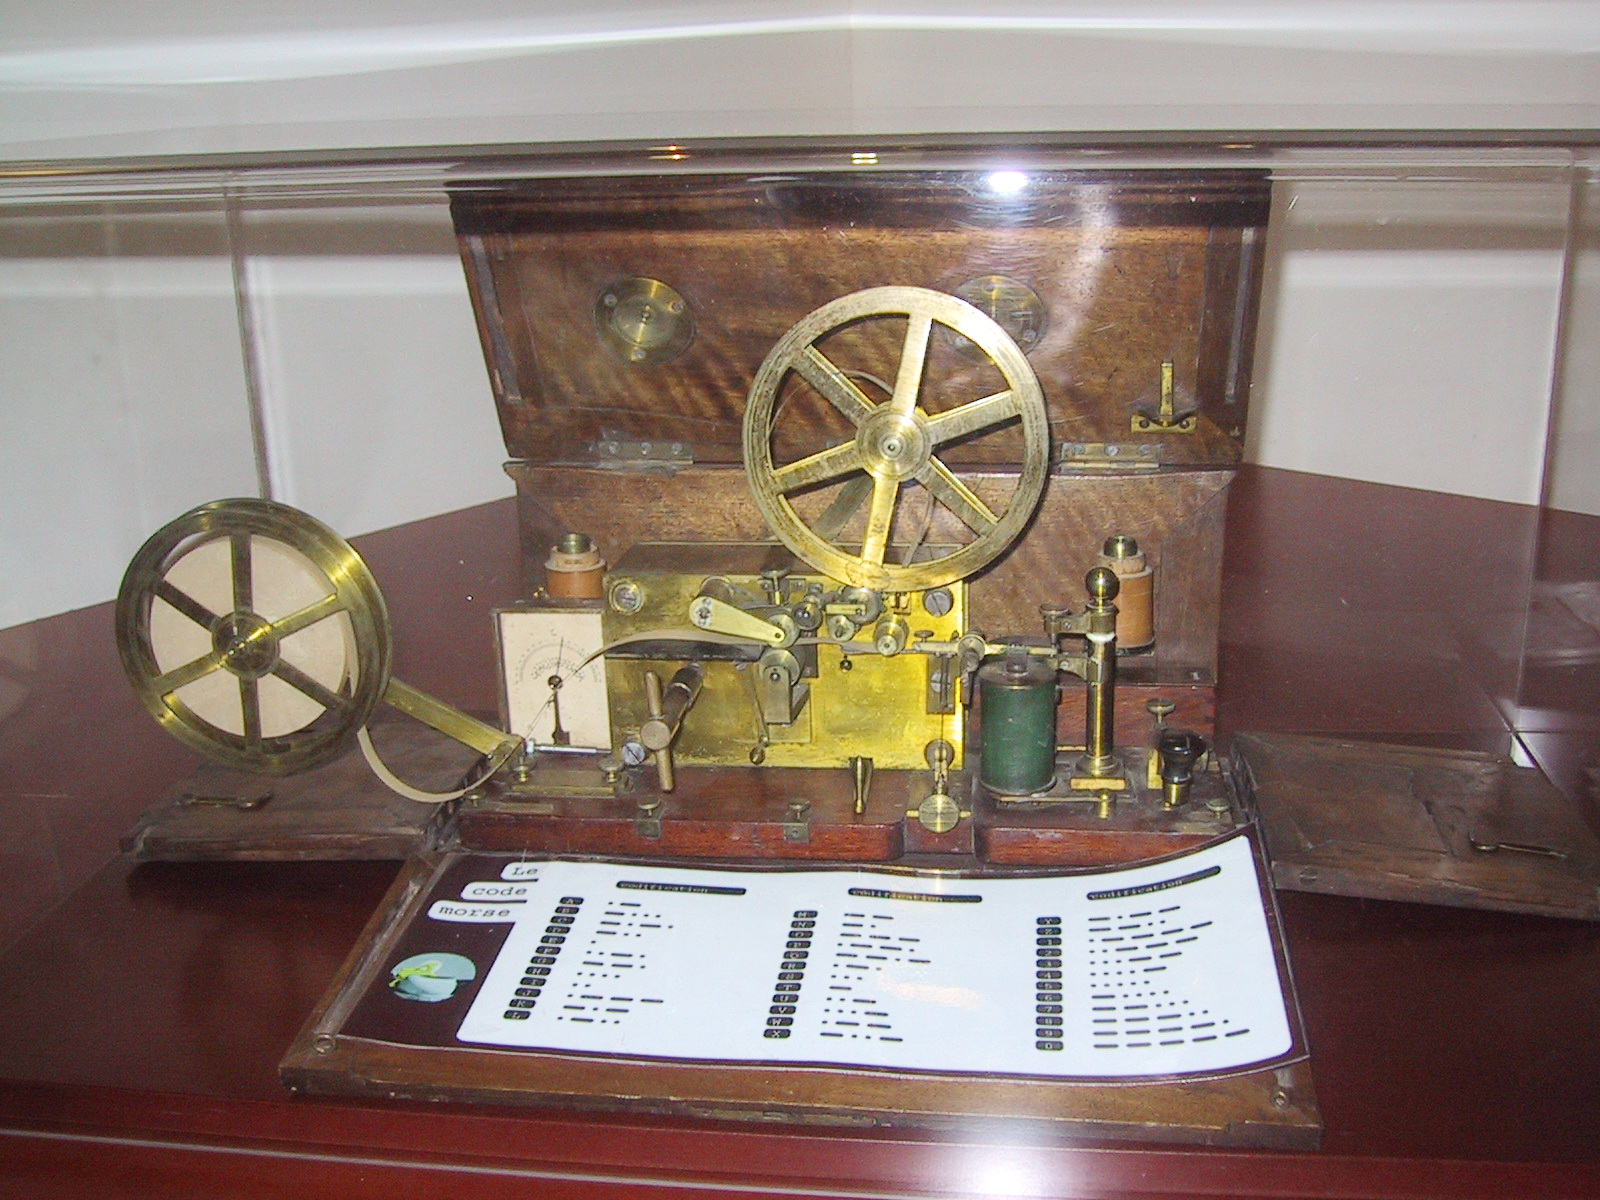 電報雖然成為歷史，但摩斯的發明已讓資訊科學浮上水面，成為日後電話及互聯網的參考對象。（維基百科圖片）